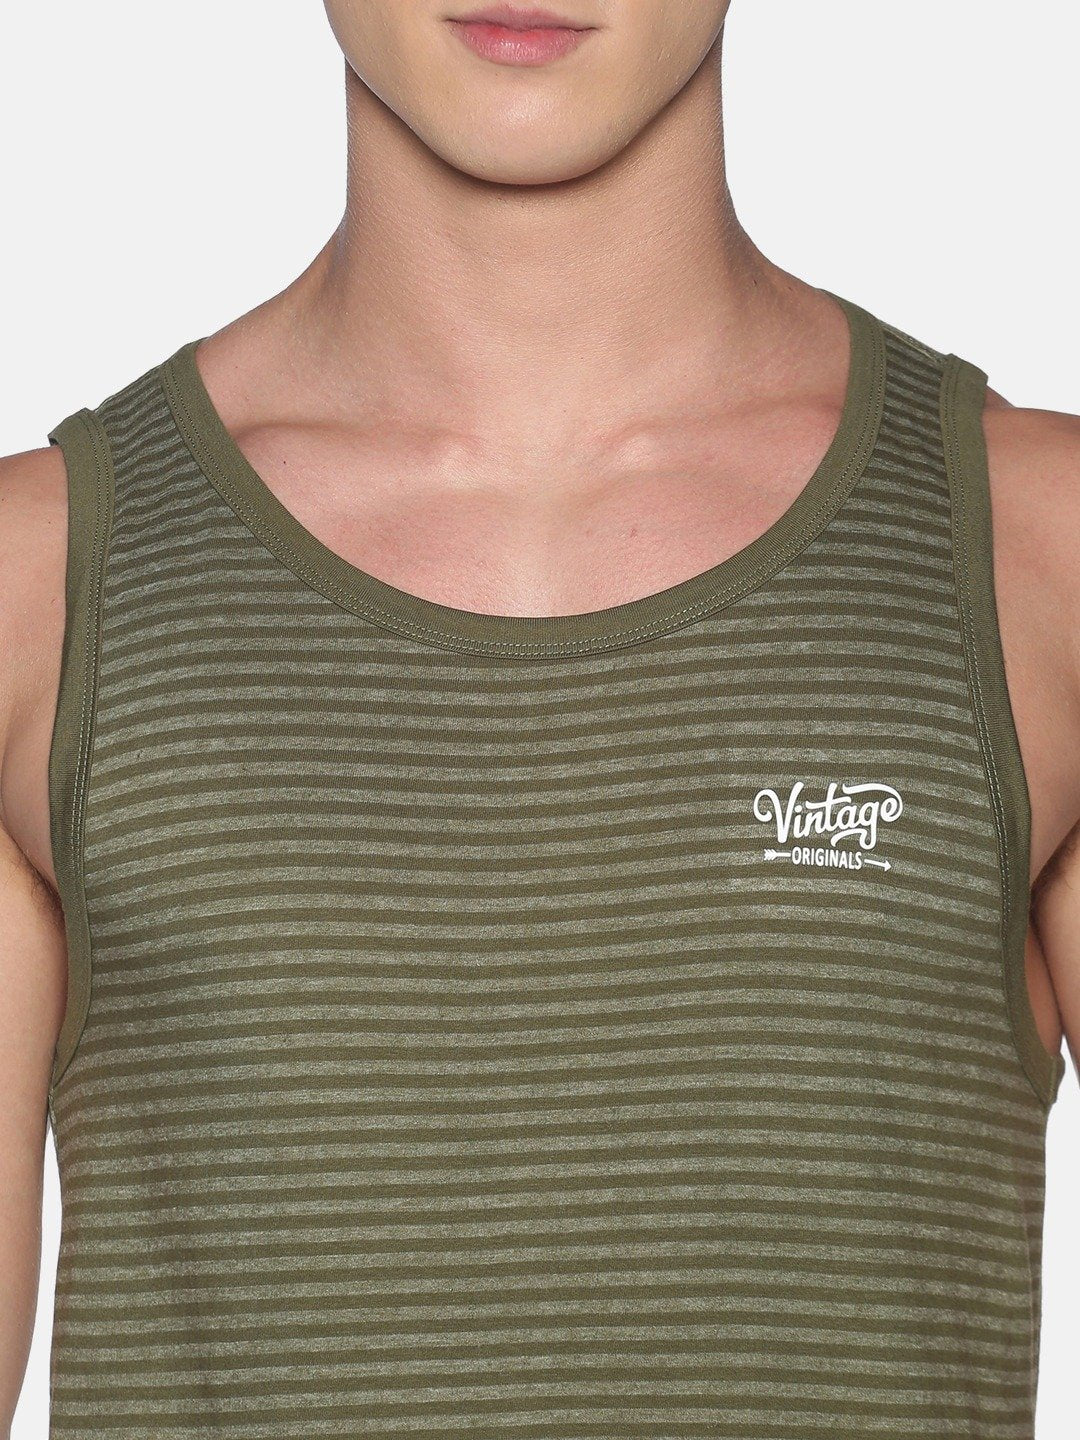 Sleeveless Green Sando Vest Tank Top for Men - Stilento